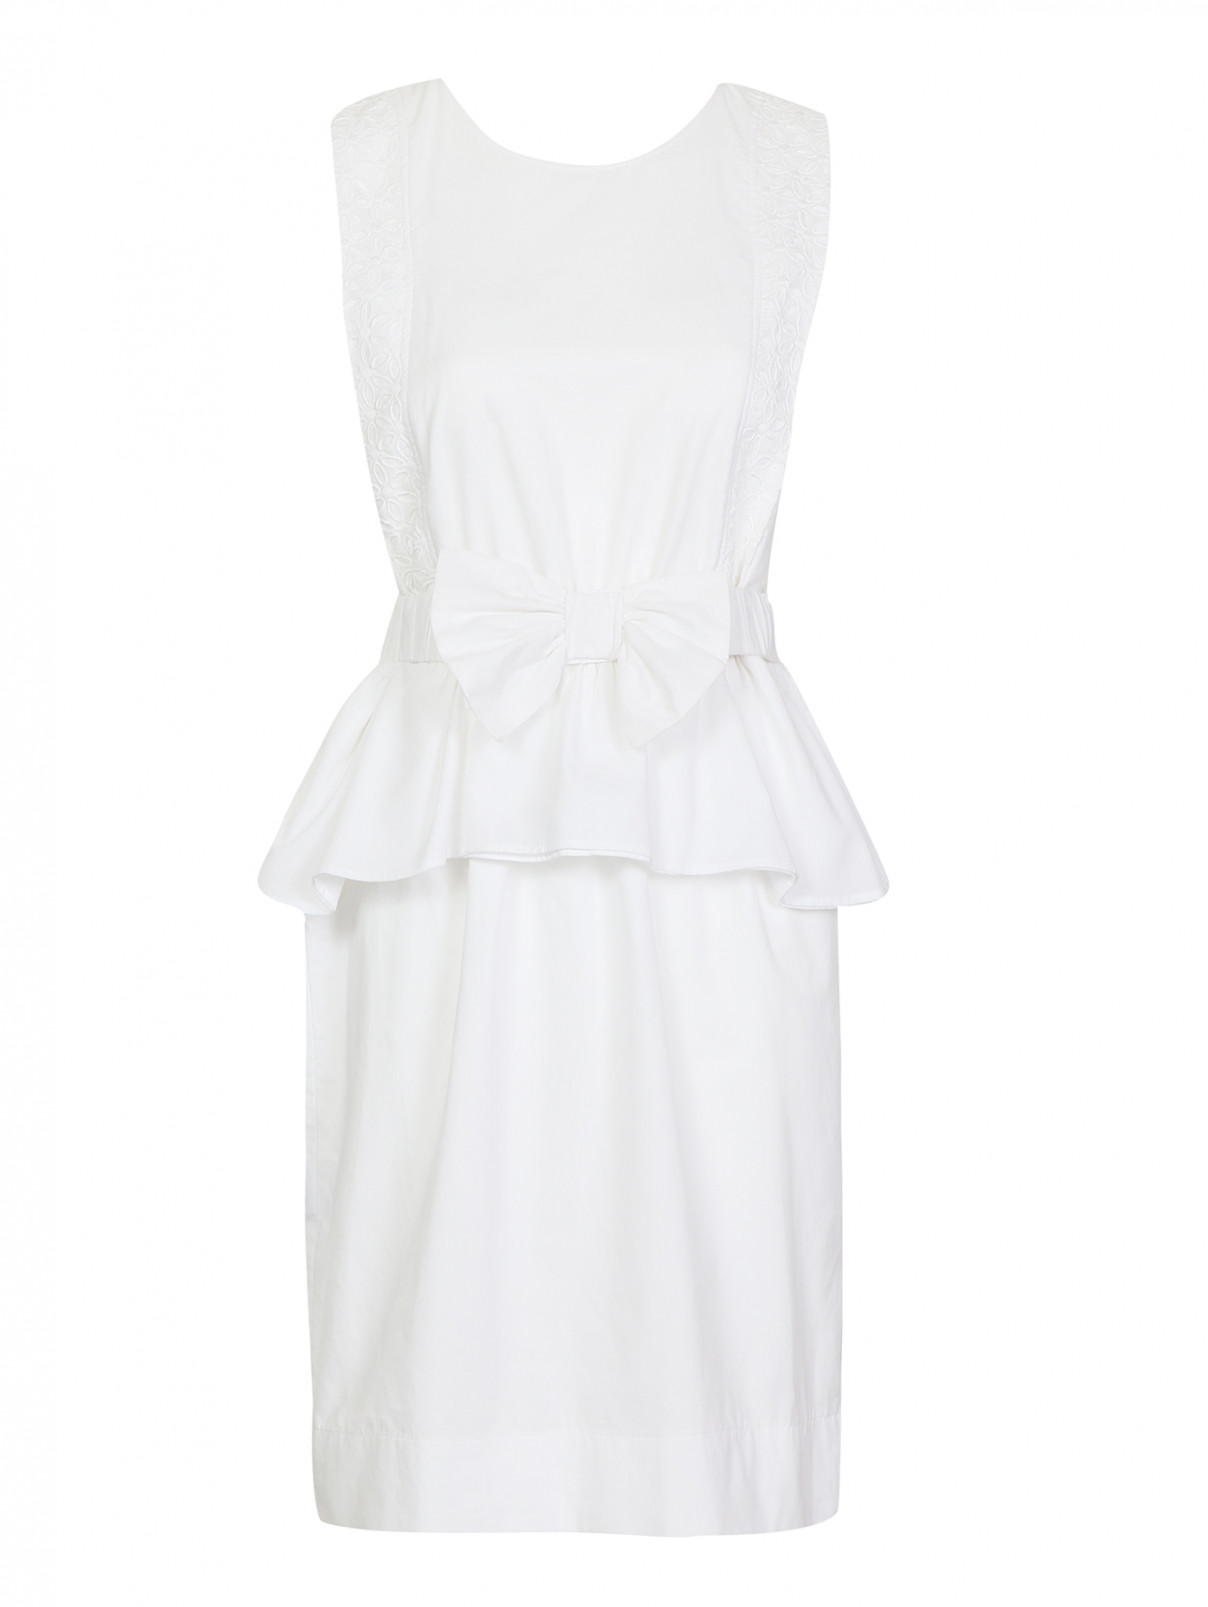 Платье из хлопка с баской и поясом на талии Caractere  –  Общий вид  – Цвет:  Белый